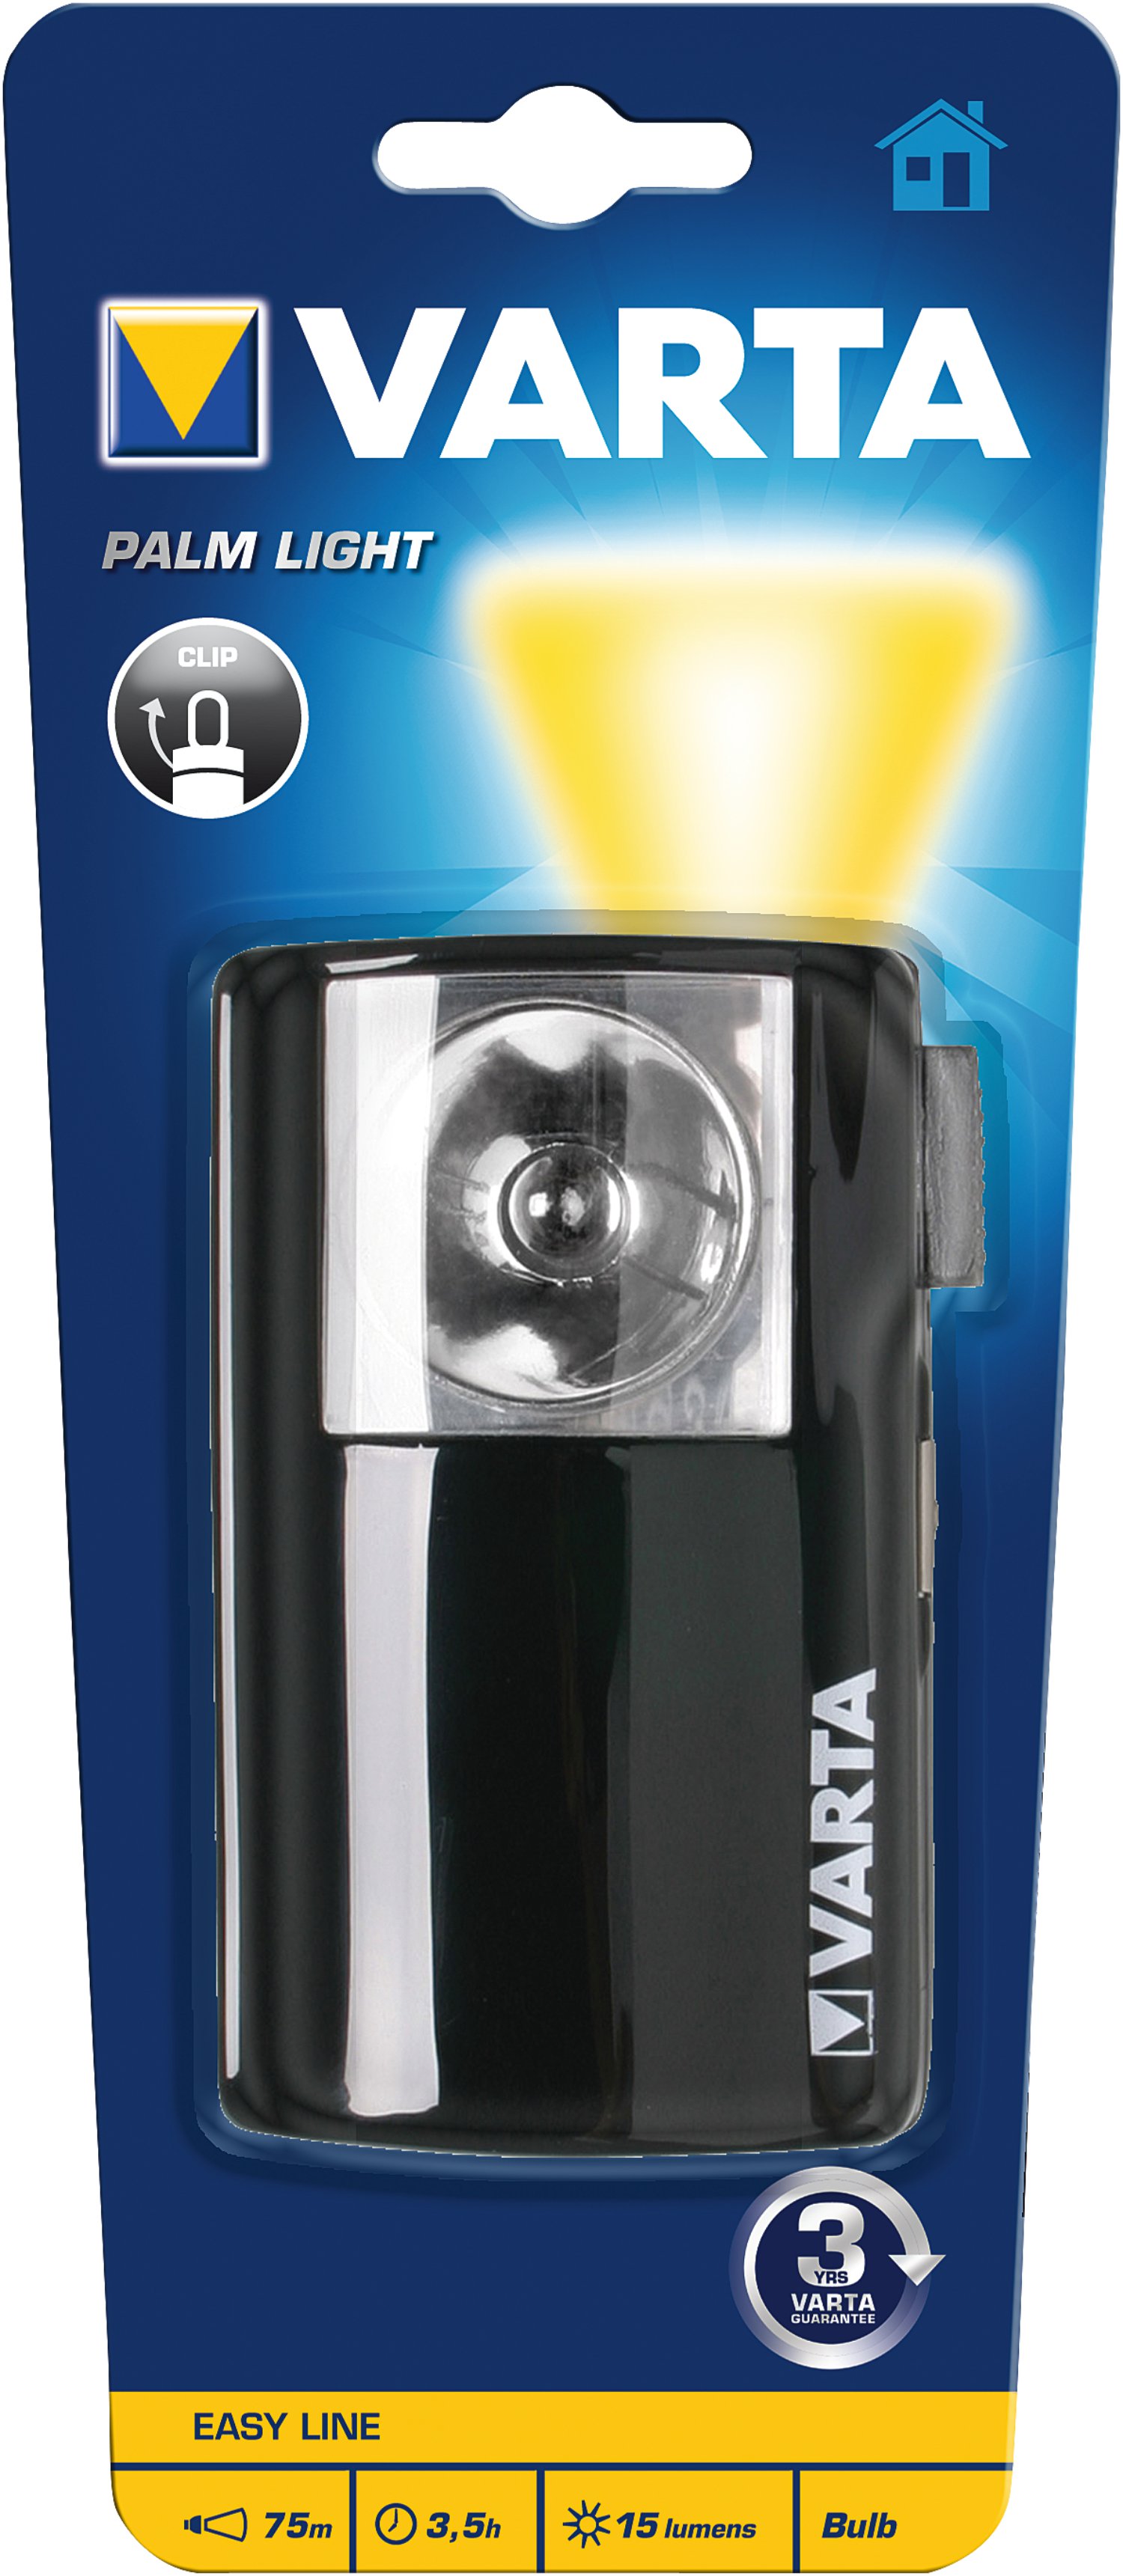 VARTA Taschenlampe Palm Light ohne Batterien 3R12